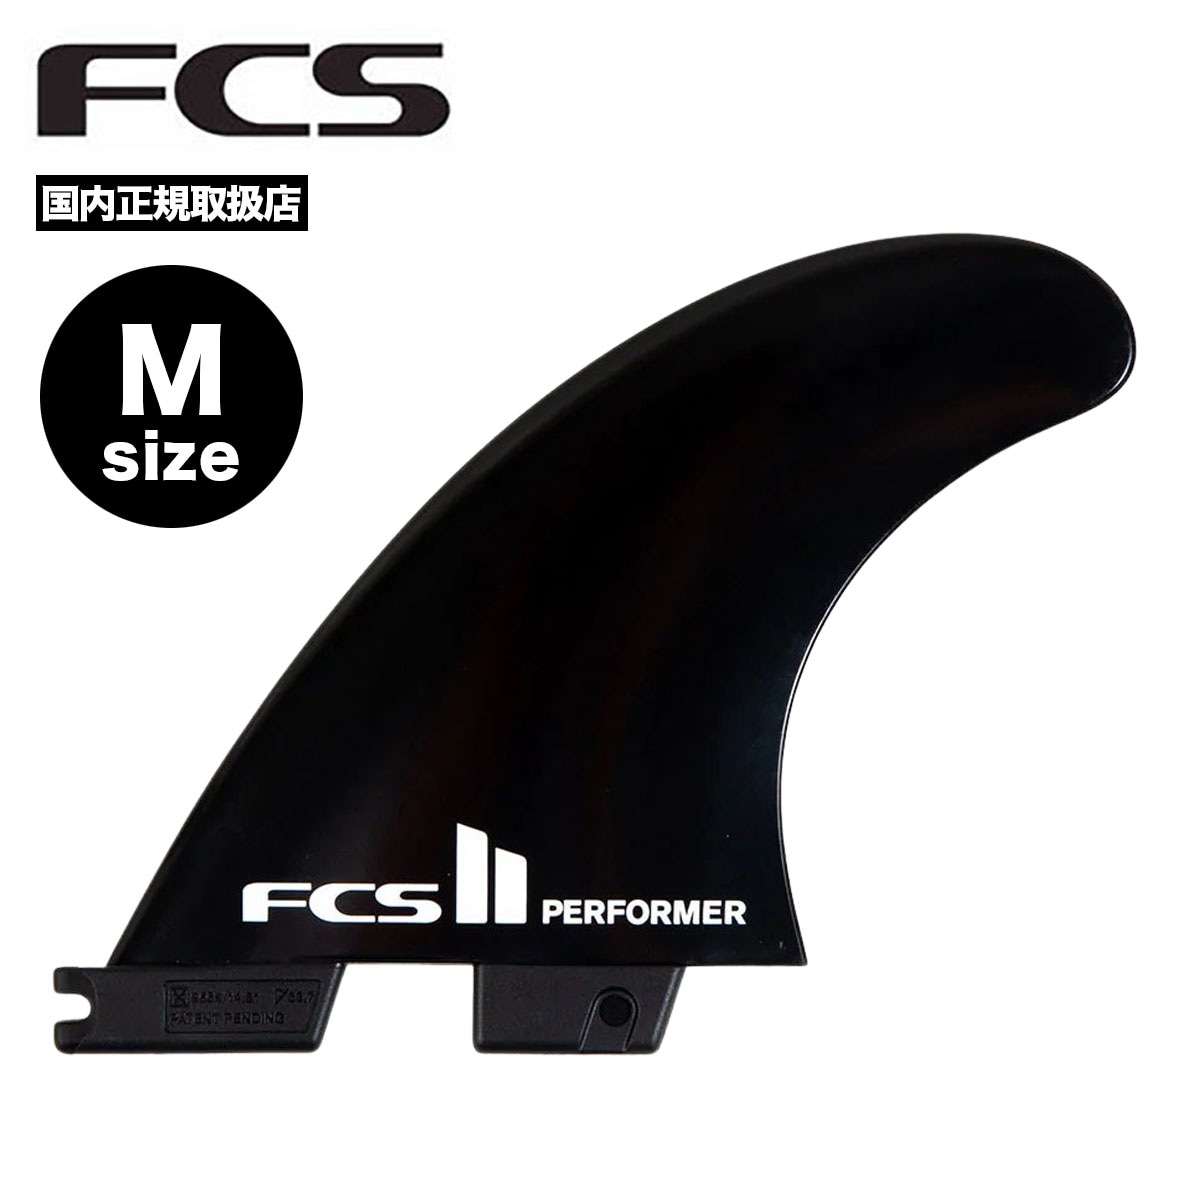 FCS2 パフォーマー Mサイズ | hartwellspremium.com